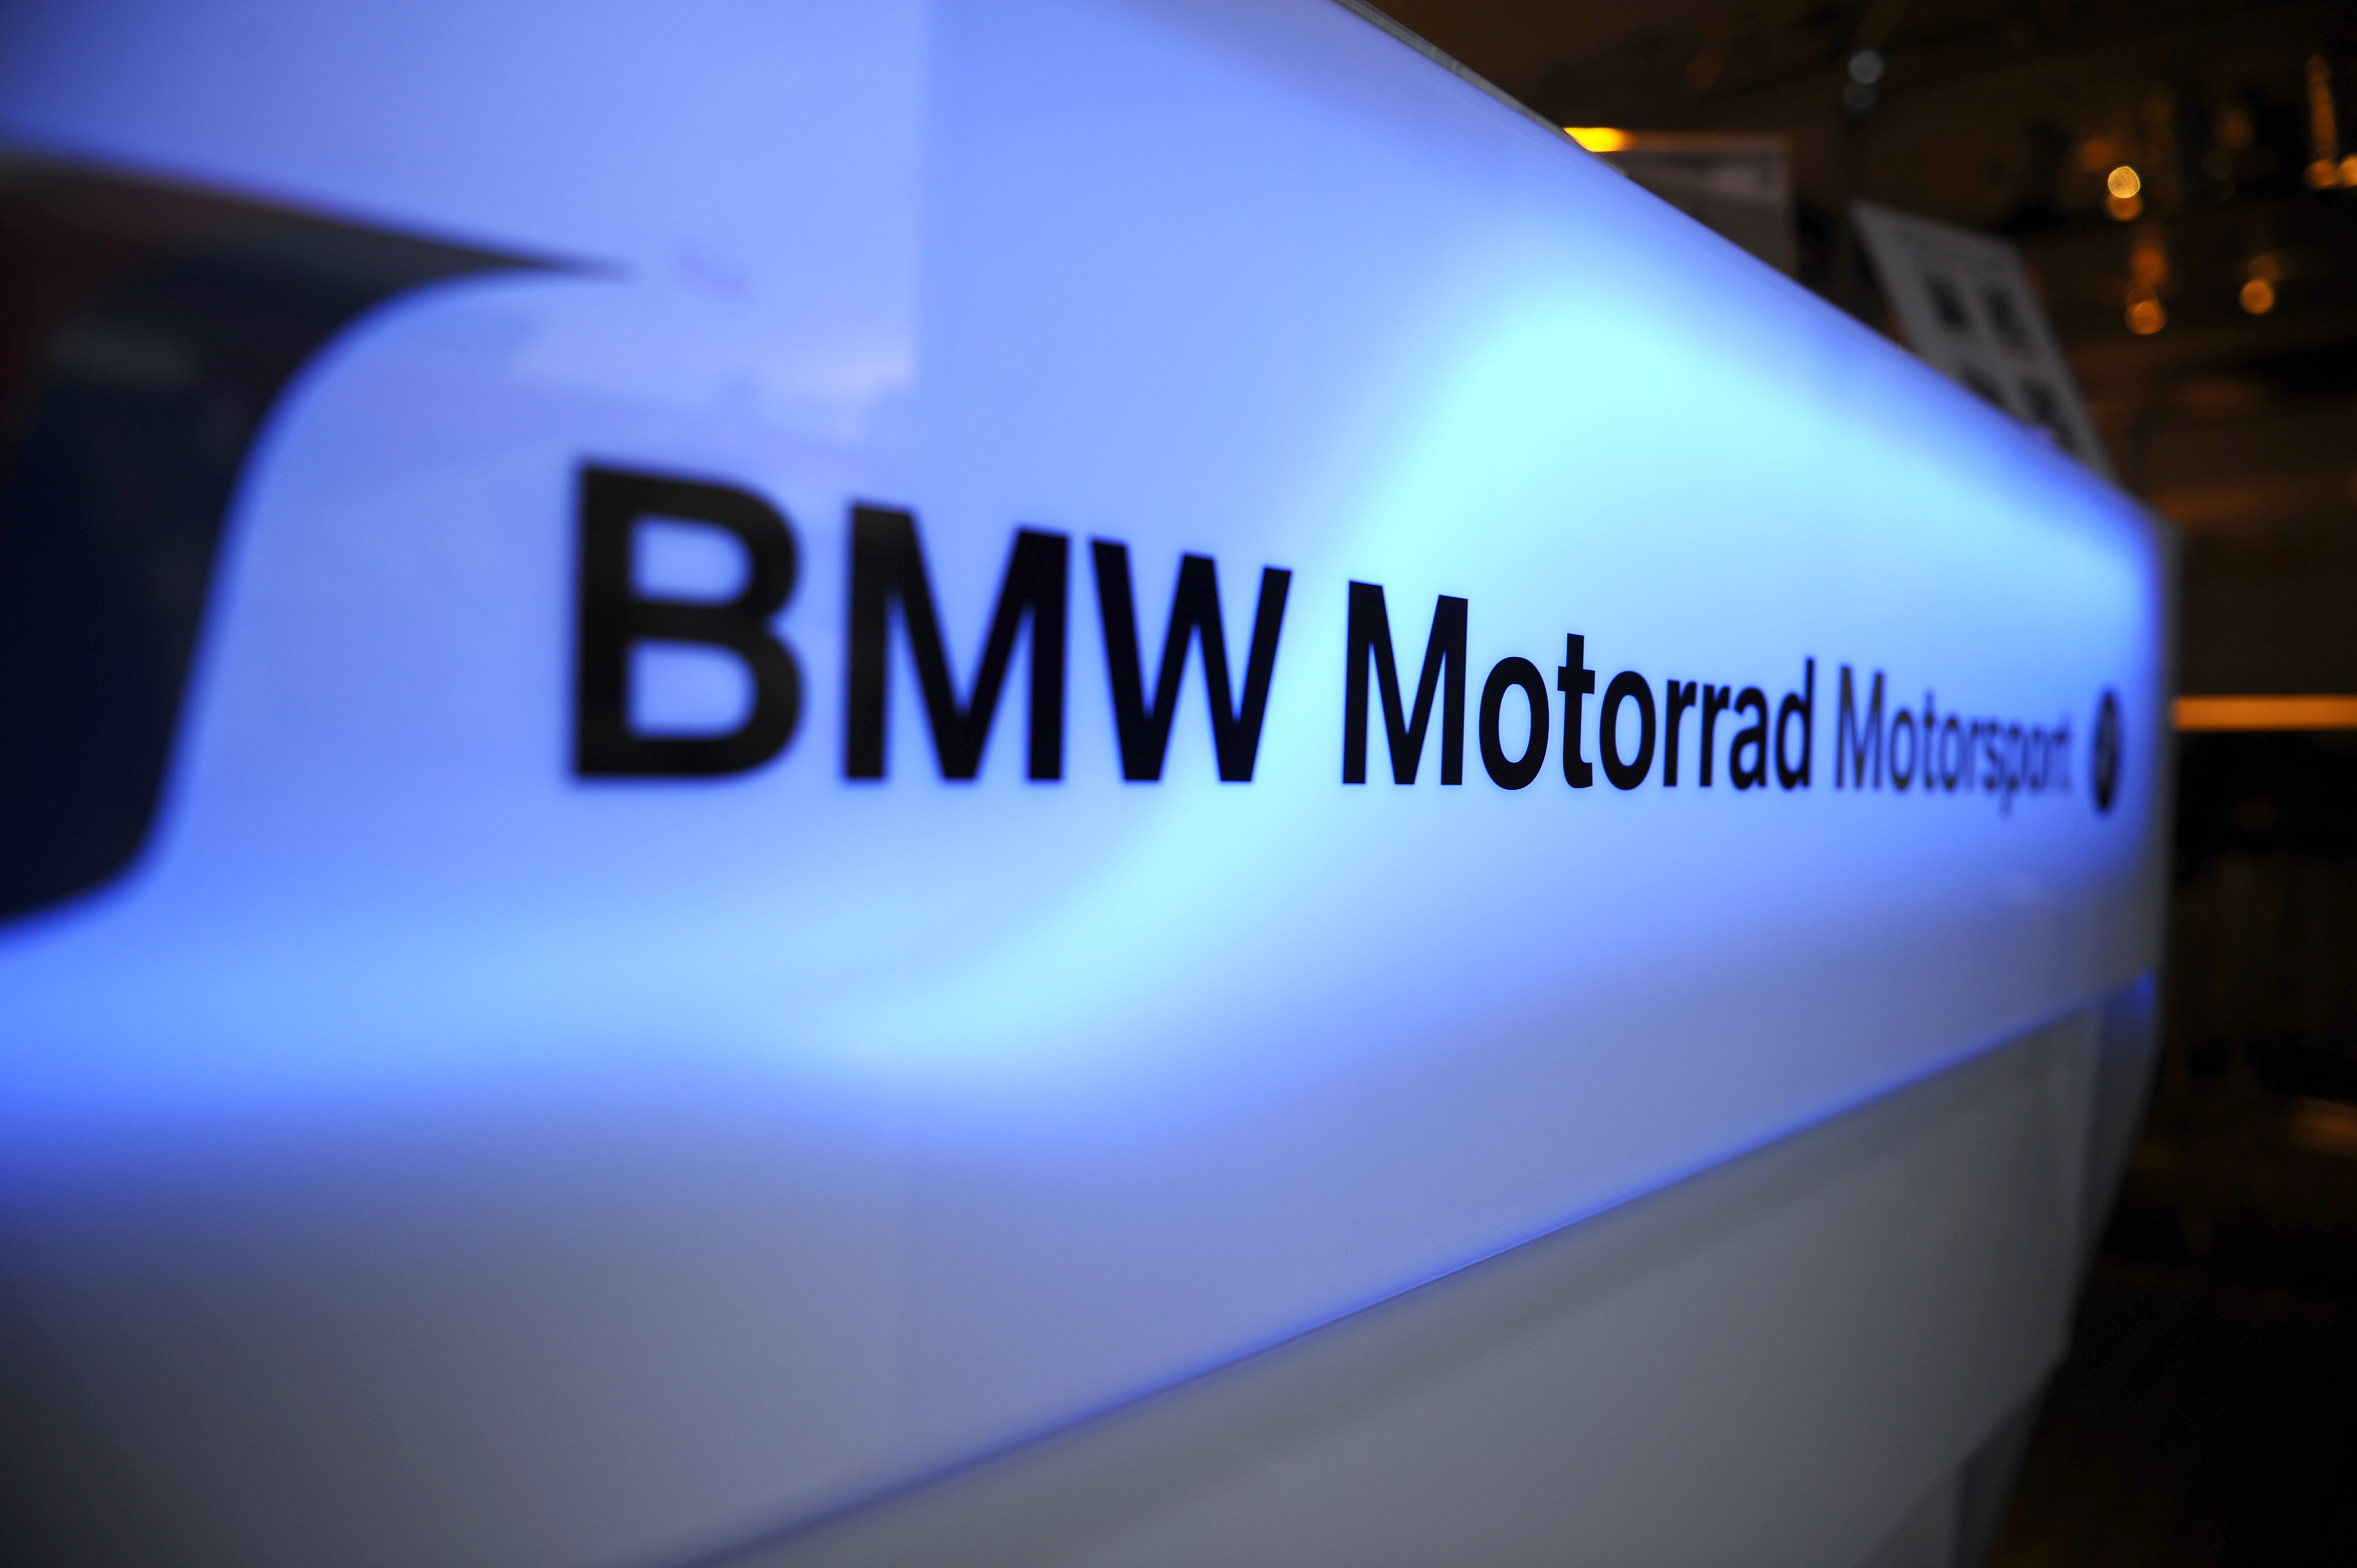 BMWMotorrad